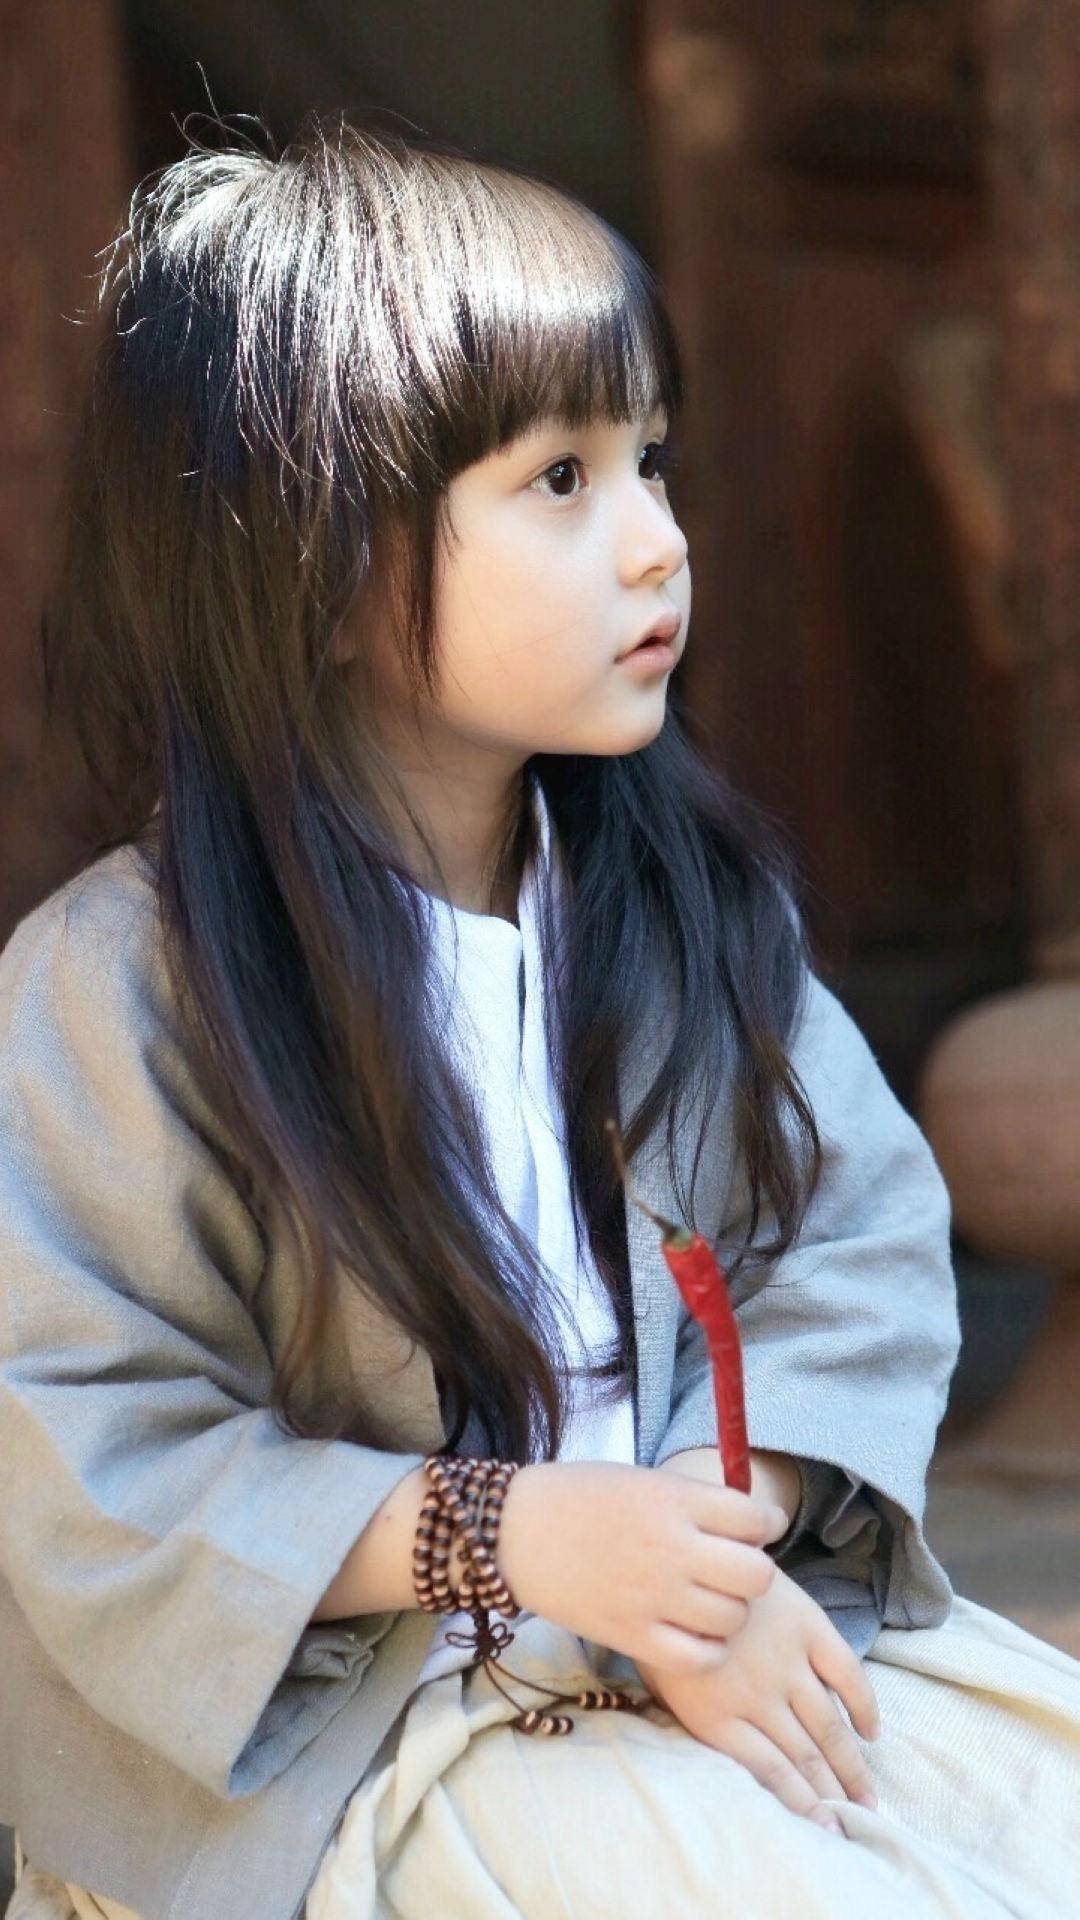 可爱齐刘海长发小女孩刘楚恬安静坐着的手机壁纸